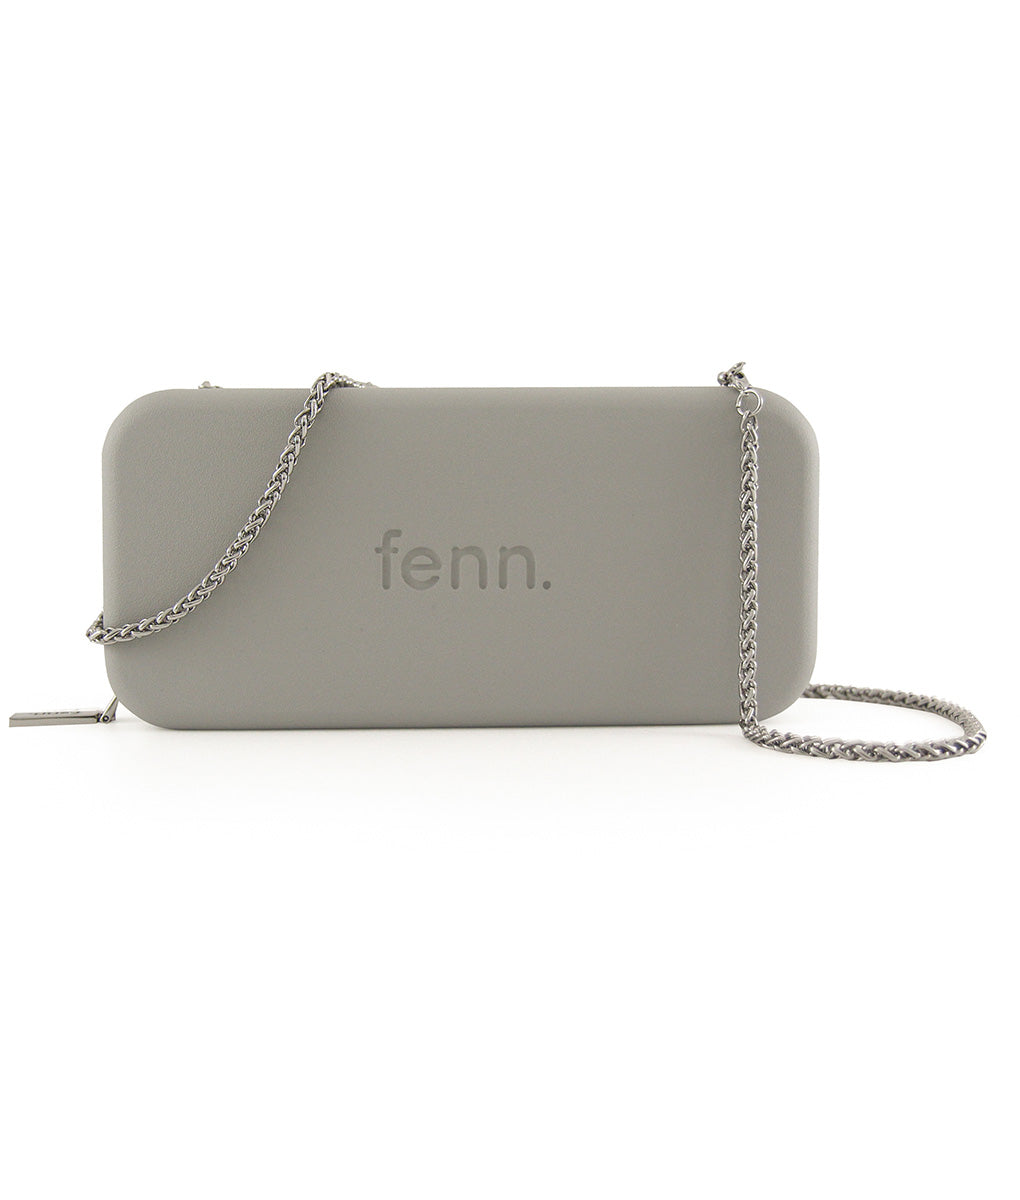 Fenn Fenn016-003 New Grey Handle W/Chain And Card